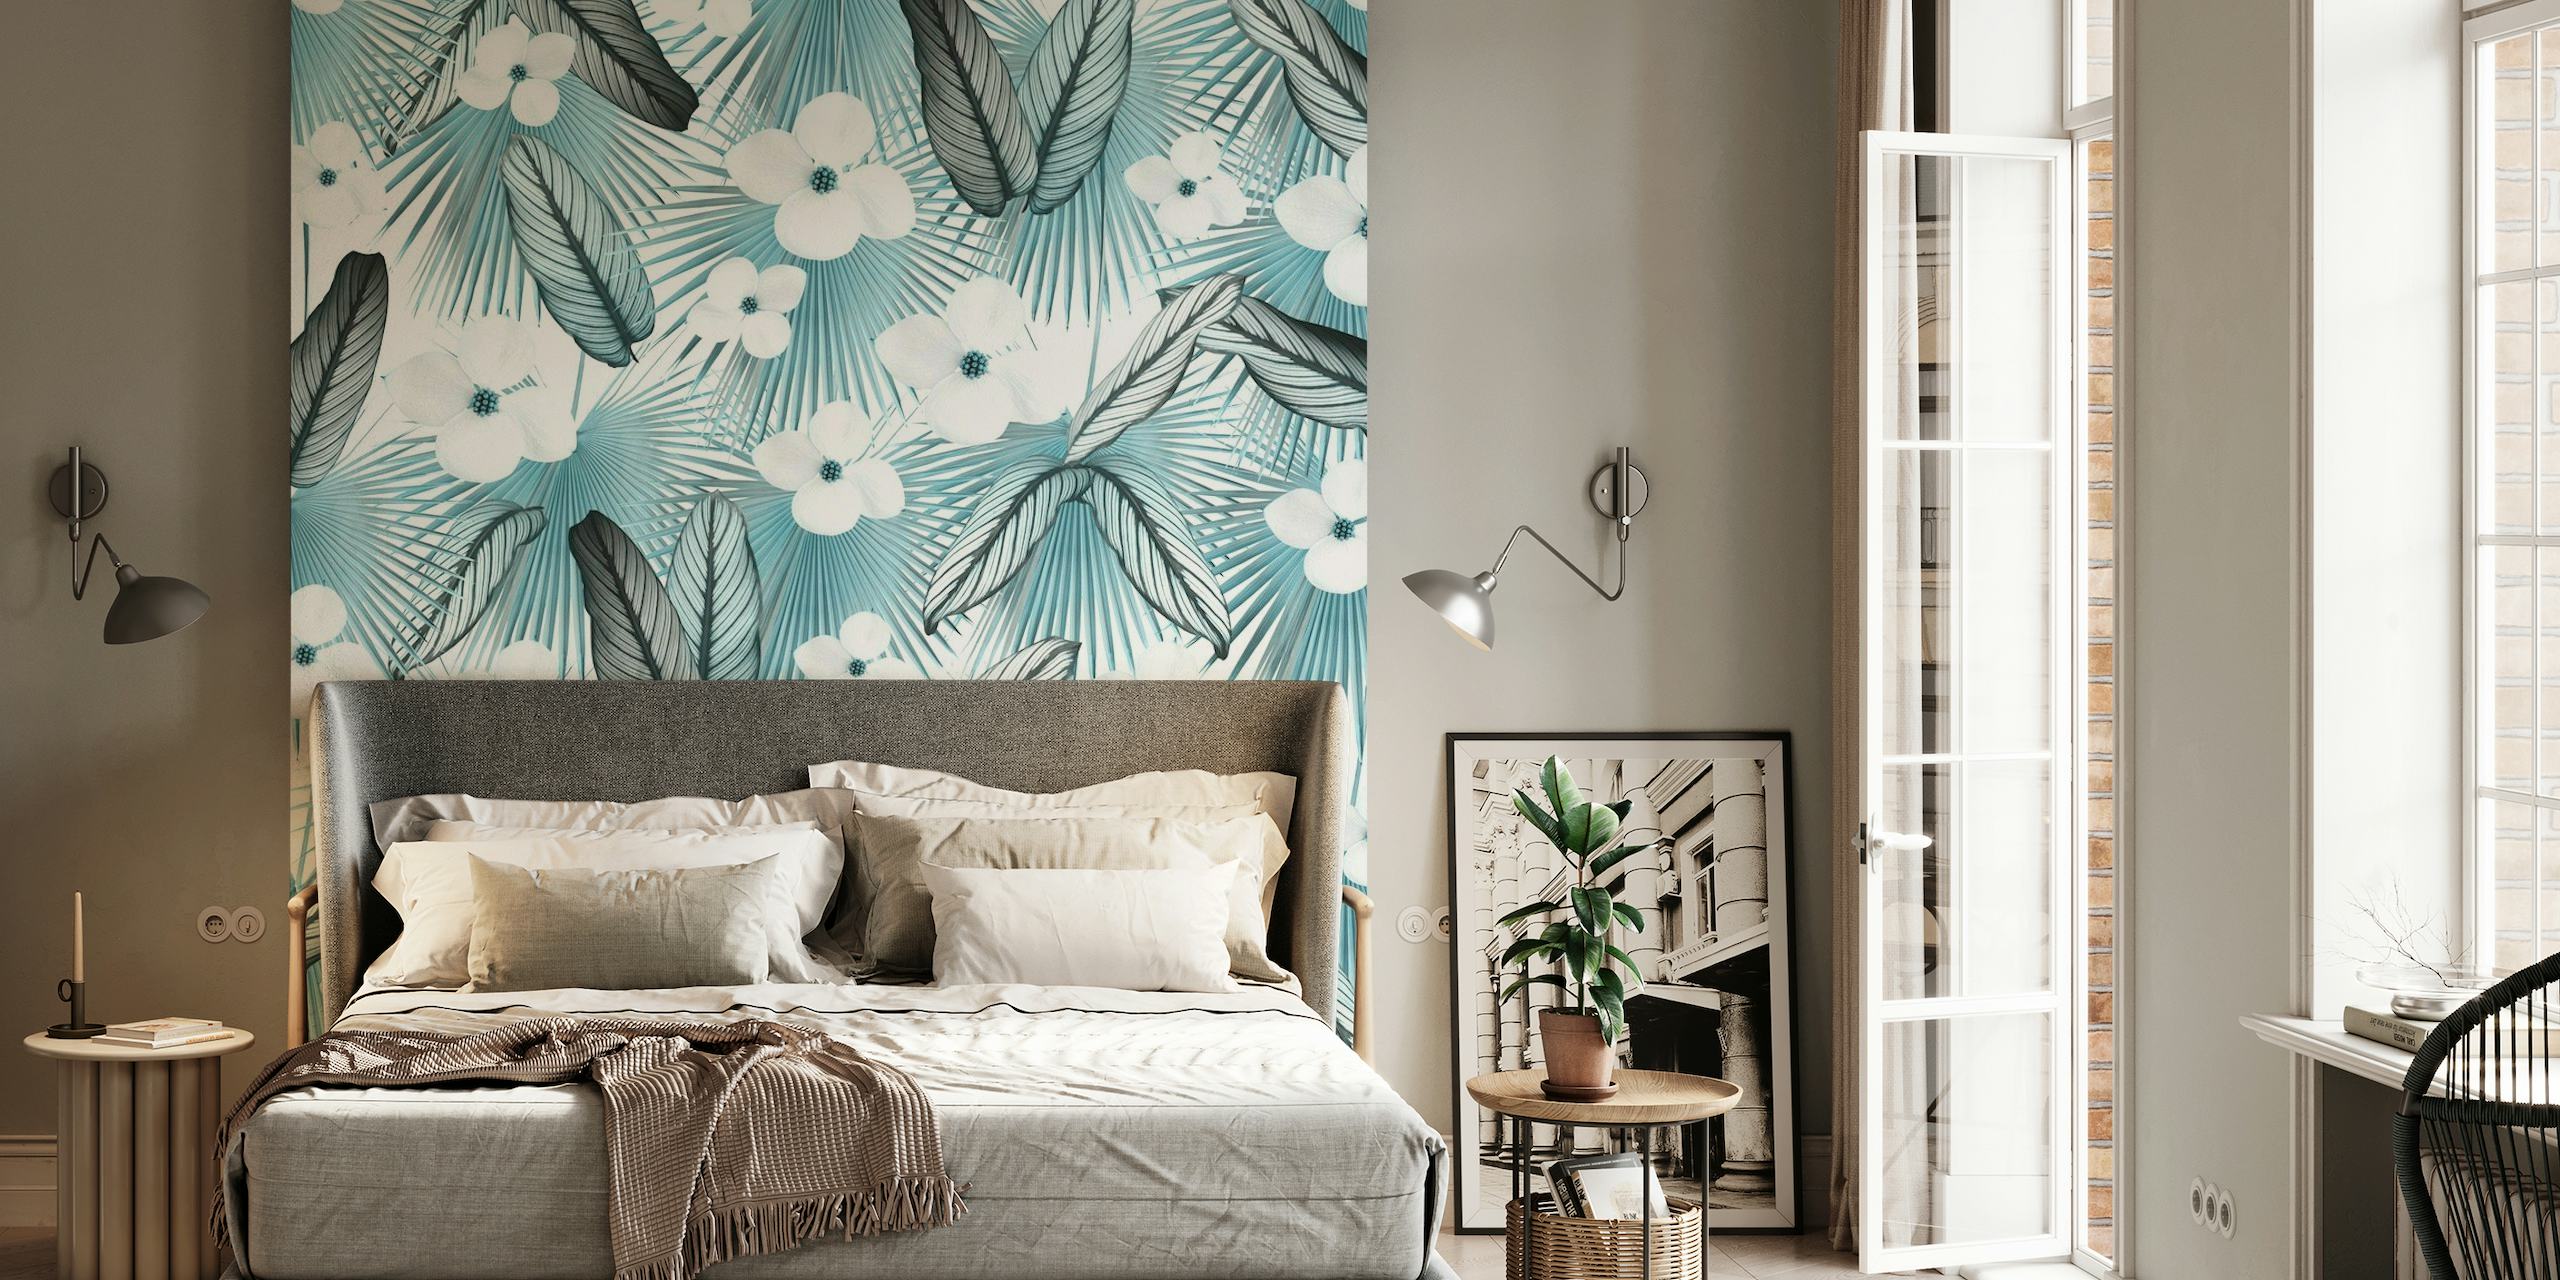 Calathea Fan Palm Bloemen muurschildering met blauwe achtergrond